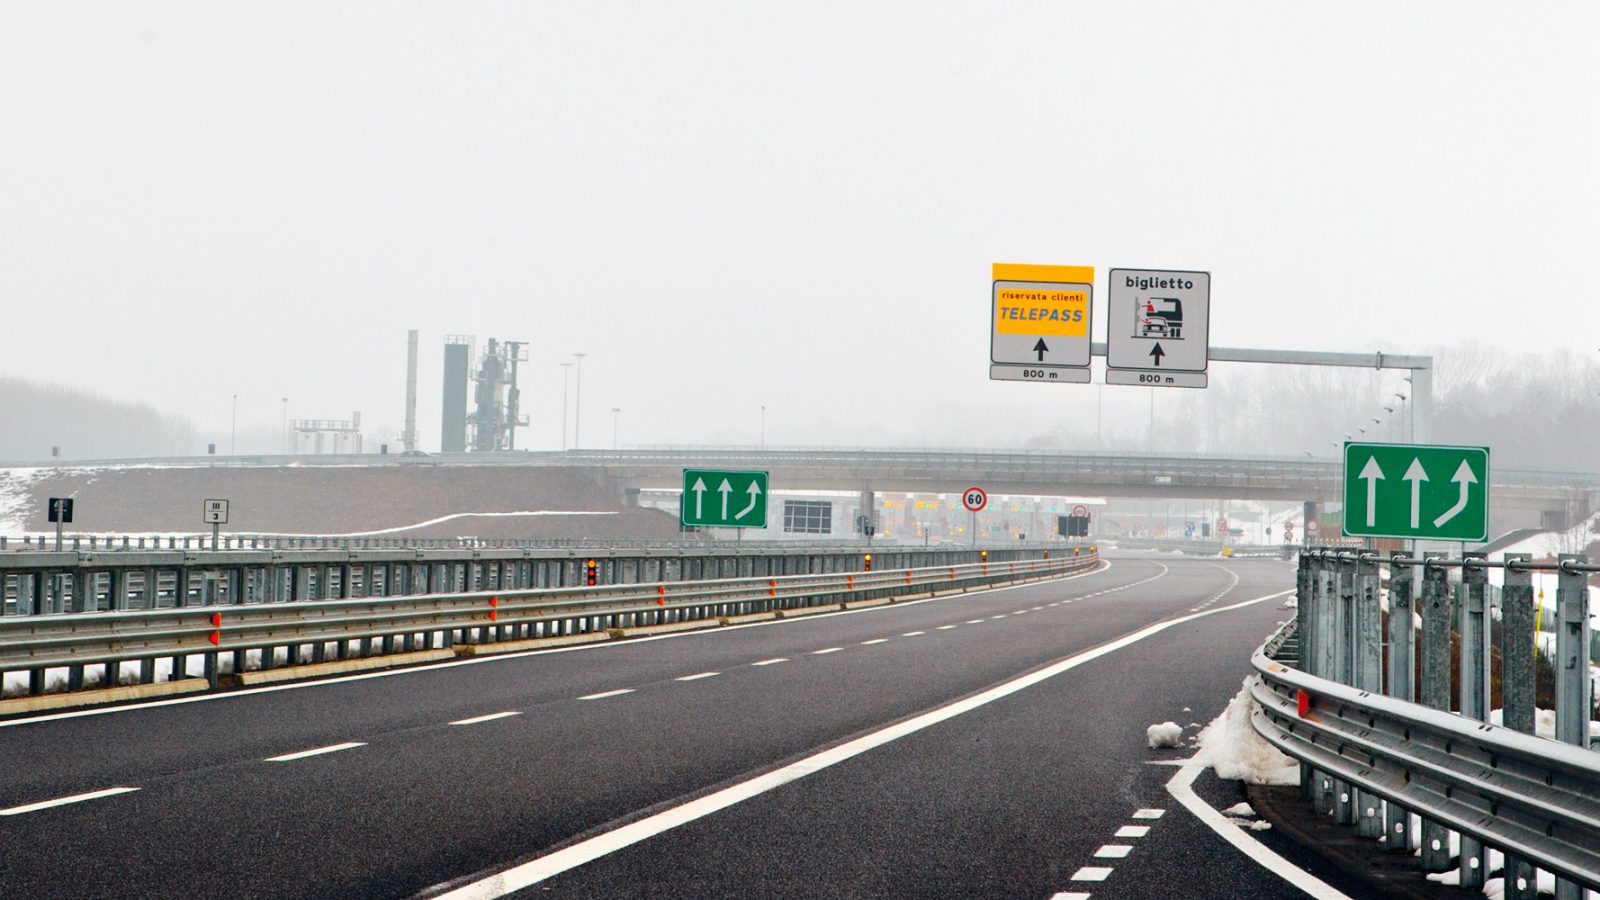 Cartello di preavviso della barriera autostradale e corsie riservate Telepass lungo l’autostrada Asti-Cuneo (Archivio storico Anas, 2012)